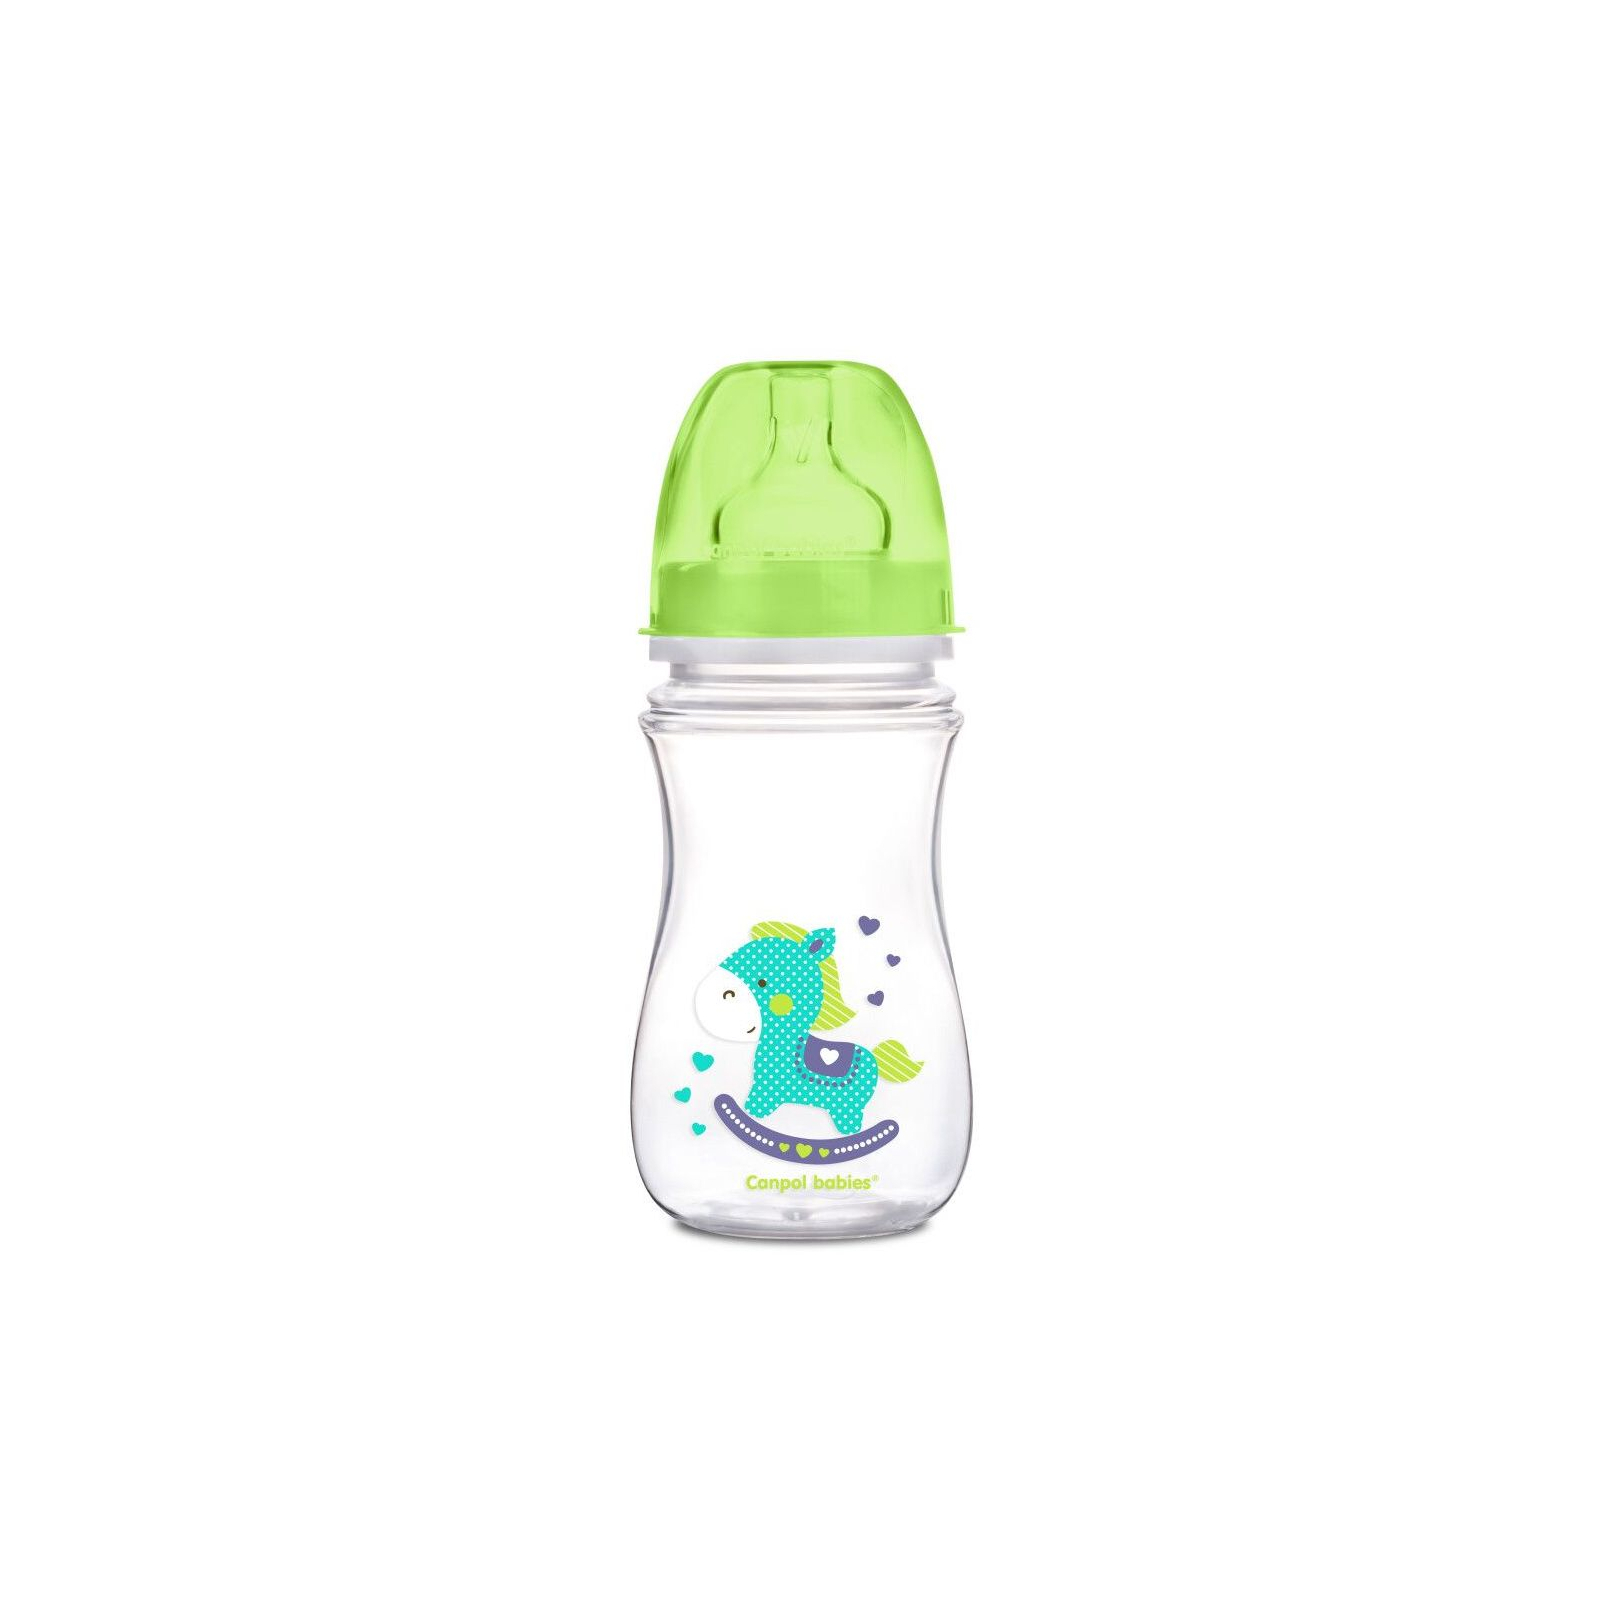 Бутылочка для кормления Canpol babies Easystart Цветные зверьки 120 мл Бирюзовая (35/205)